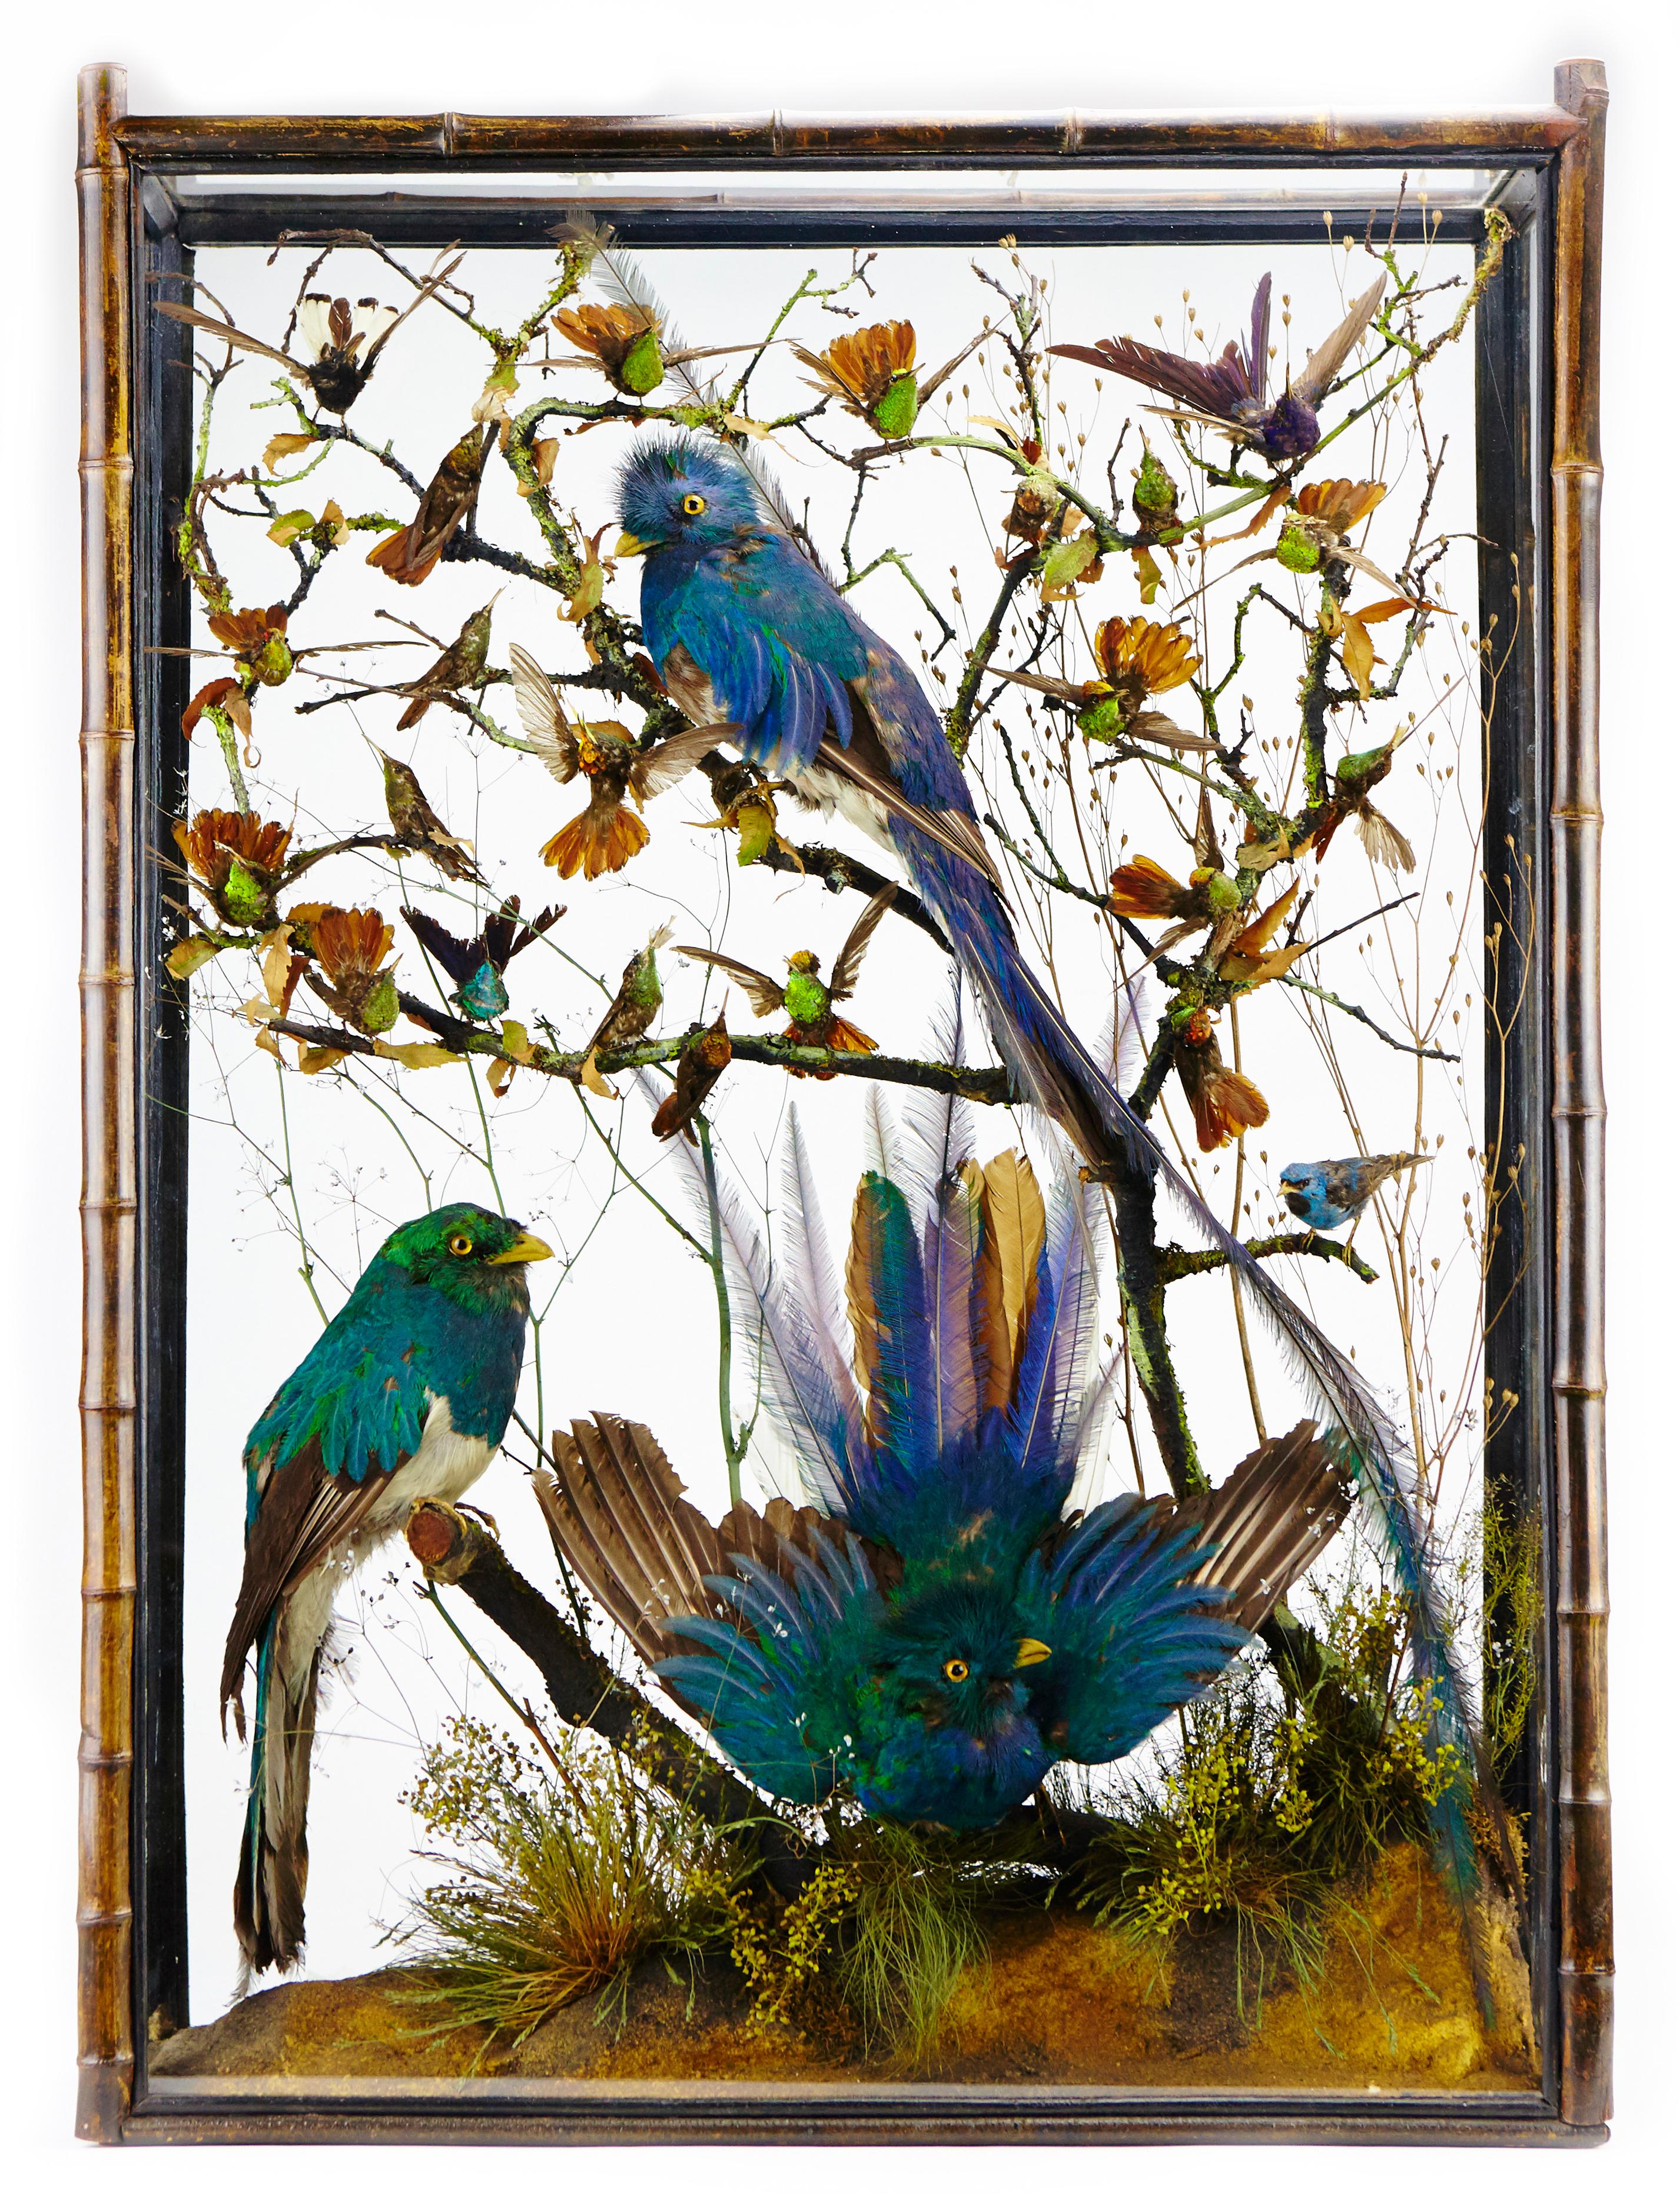 Une paire de vitrines victoriennes extrêmement rares avec un quetzal resplendissant (PHAROMACHRUS MOCINNO), un cotinga et des colibris taxidermisés, attribuées à Henry Ward (1812-1878).

Angleterre, début du 19e siècle

L'une d'entre elles est